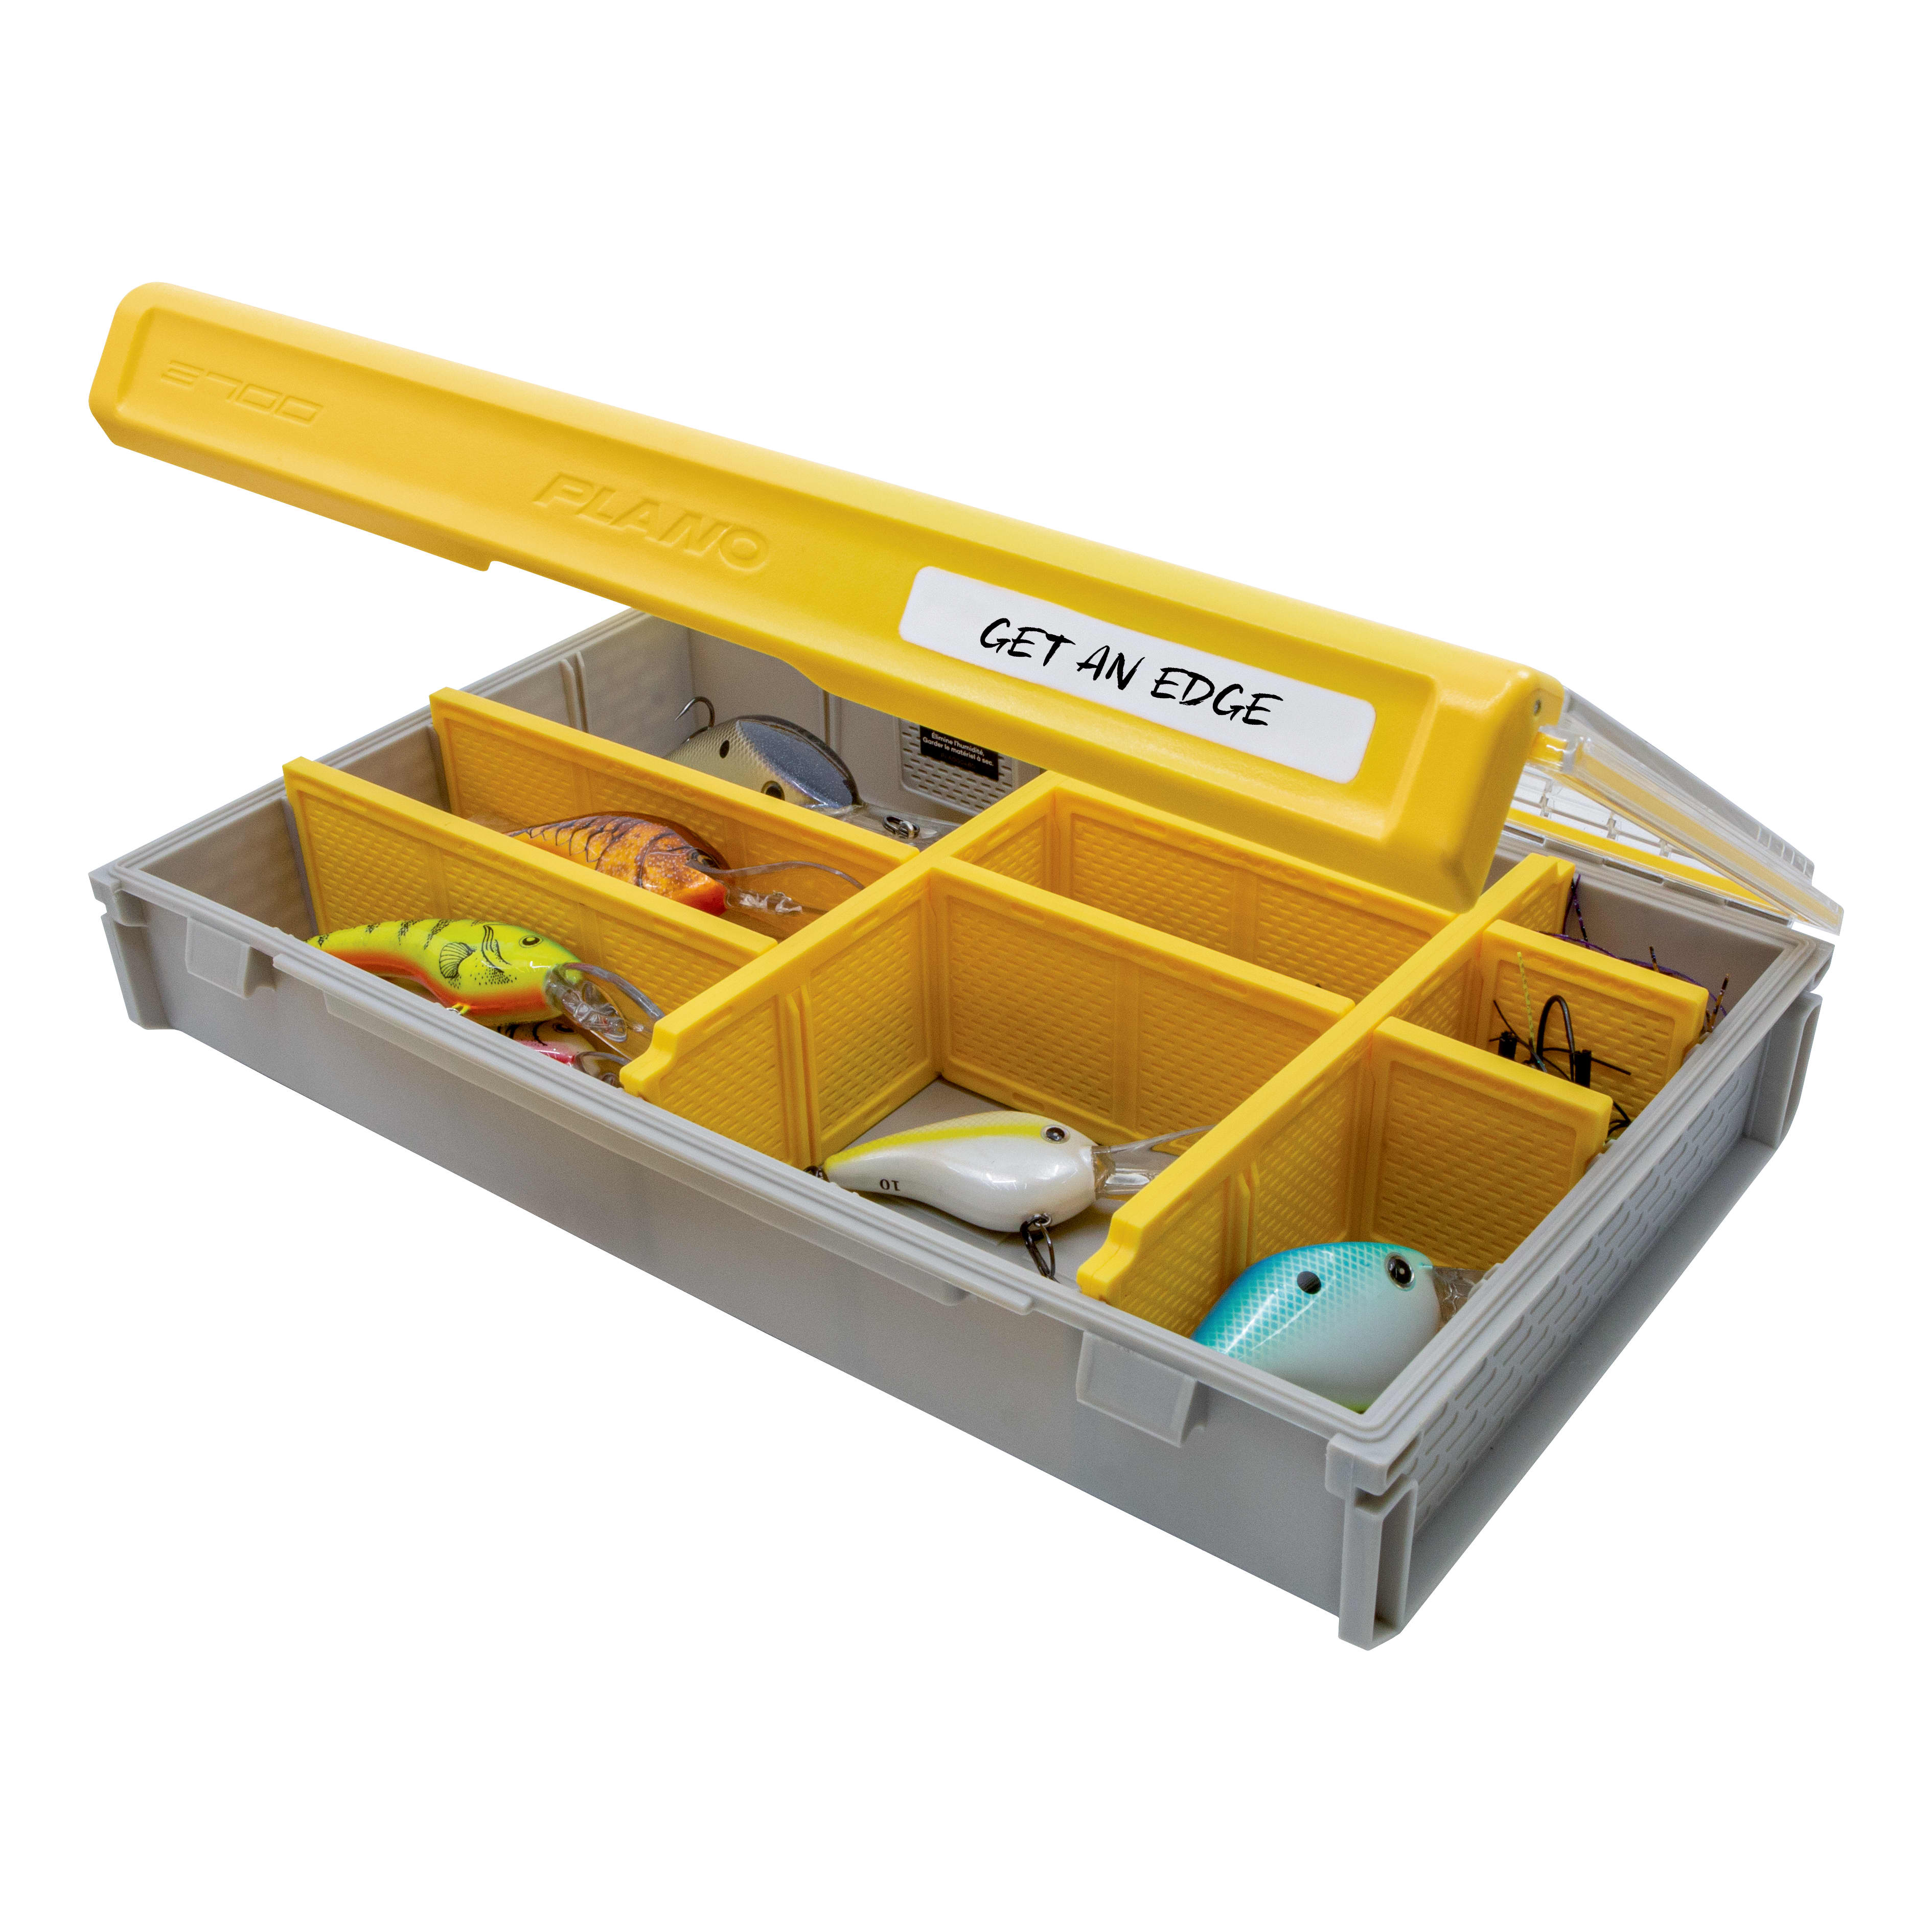 Plano® EDGE™ Flex Tackle Box